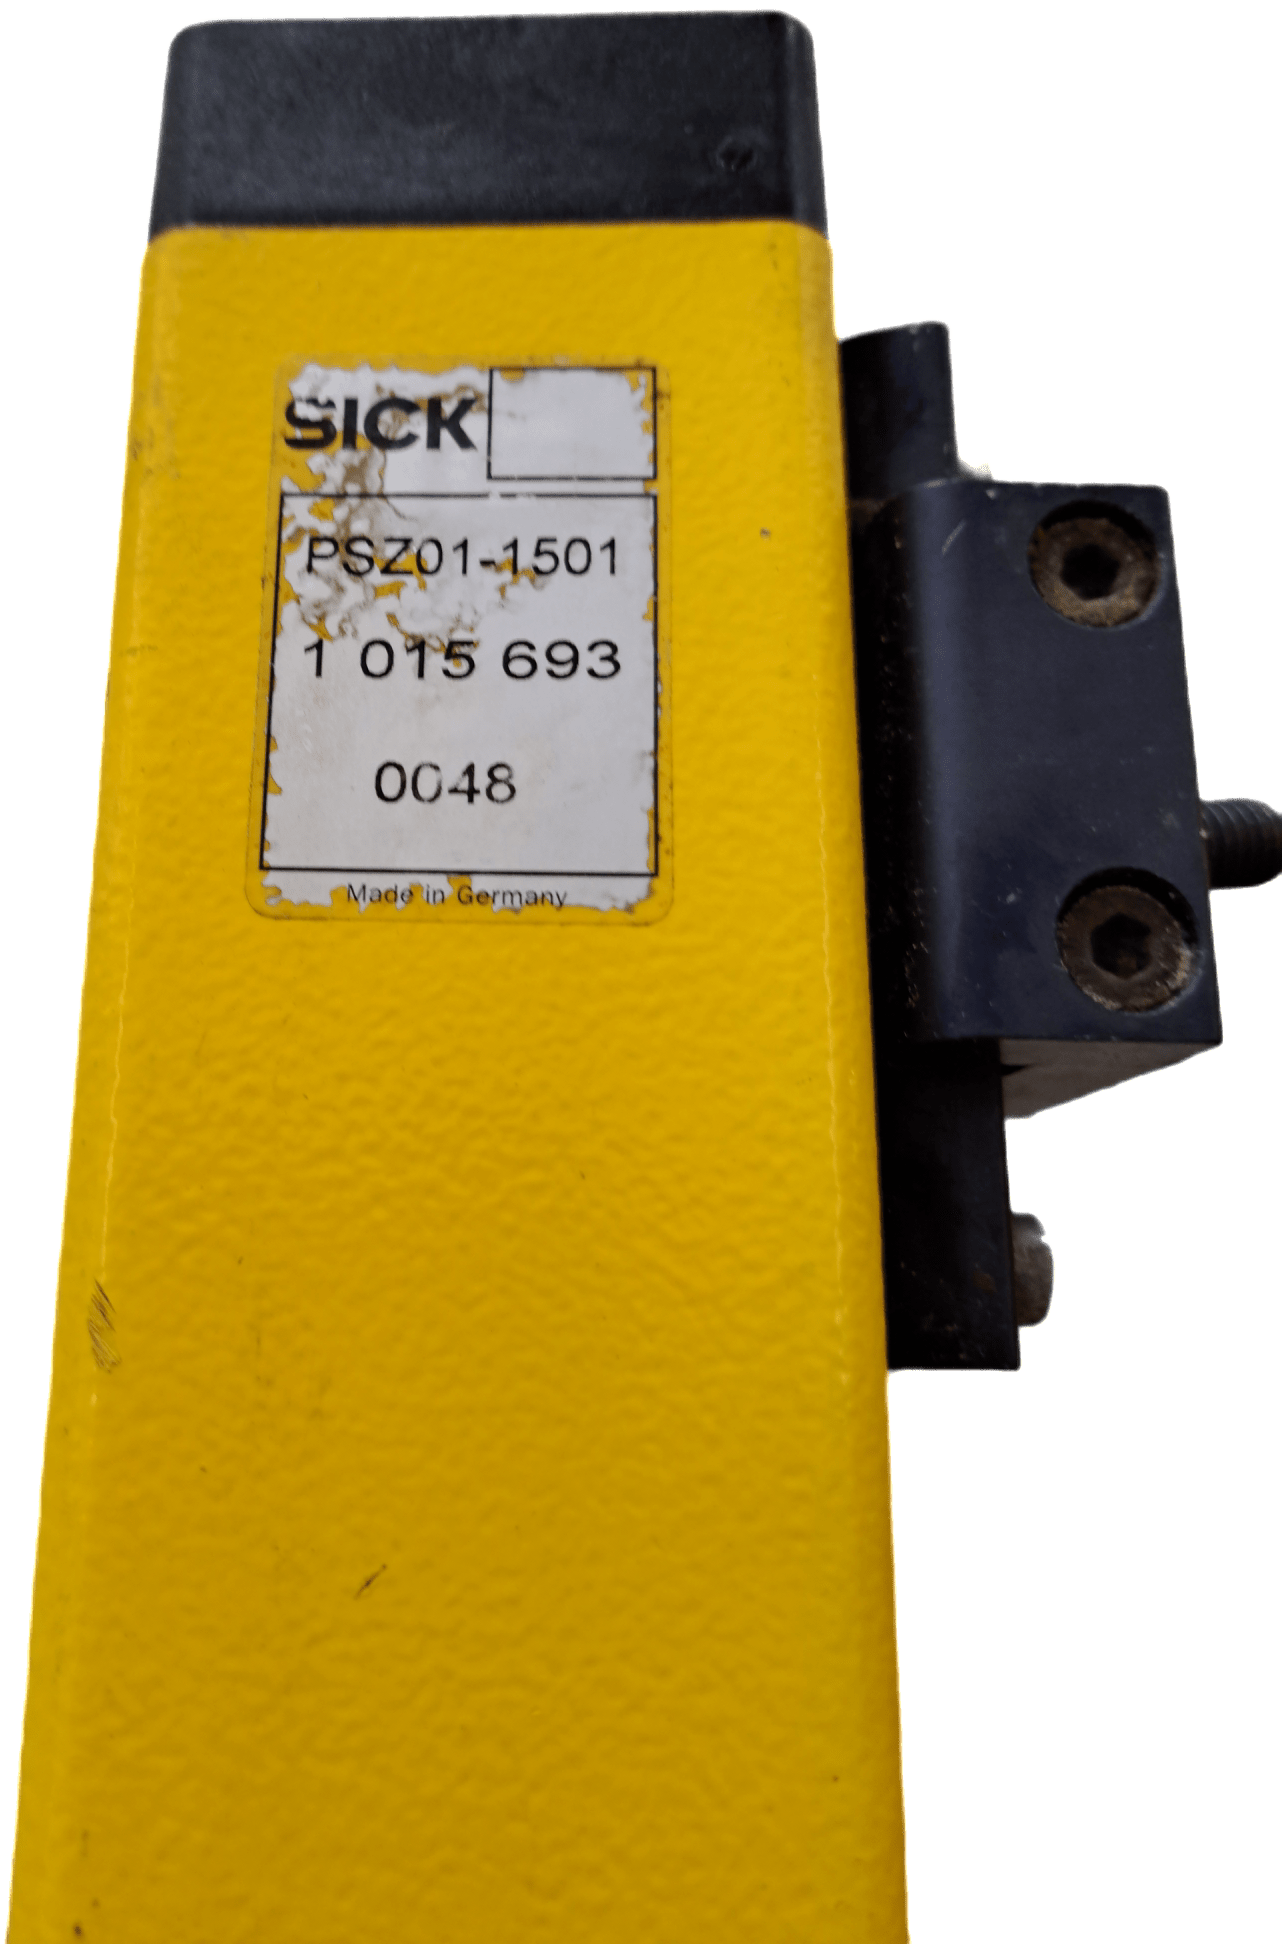 Sick Sicherheitslichtschranken Set - #product_category# | Klenk Maschinenhandel